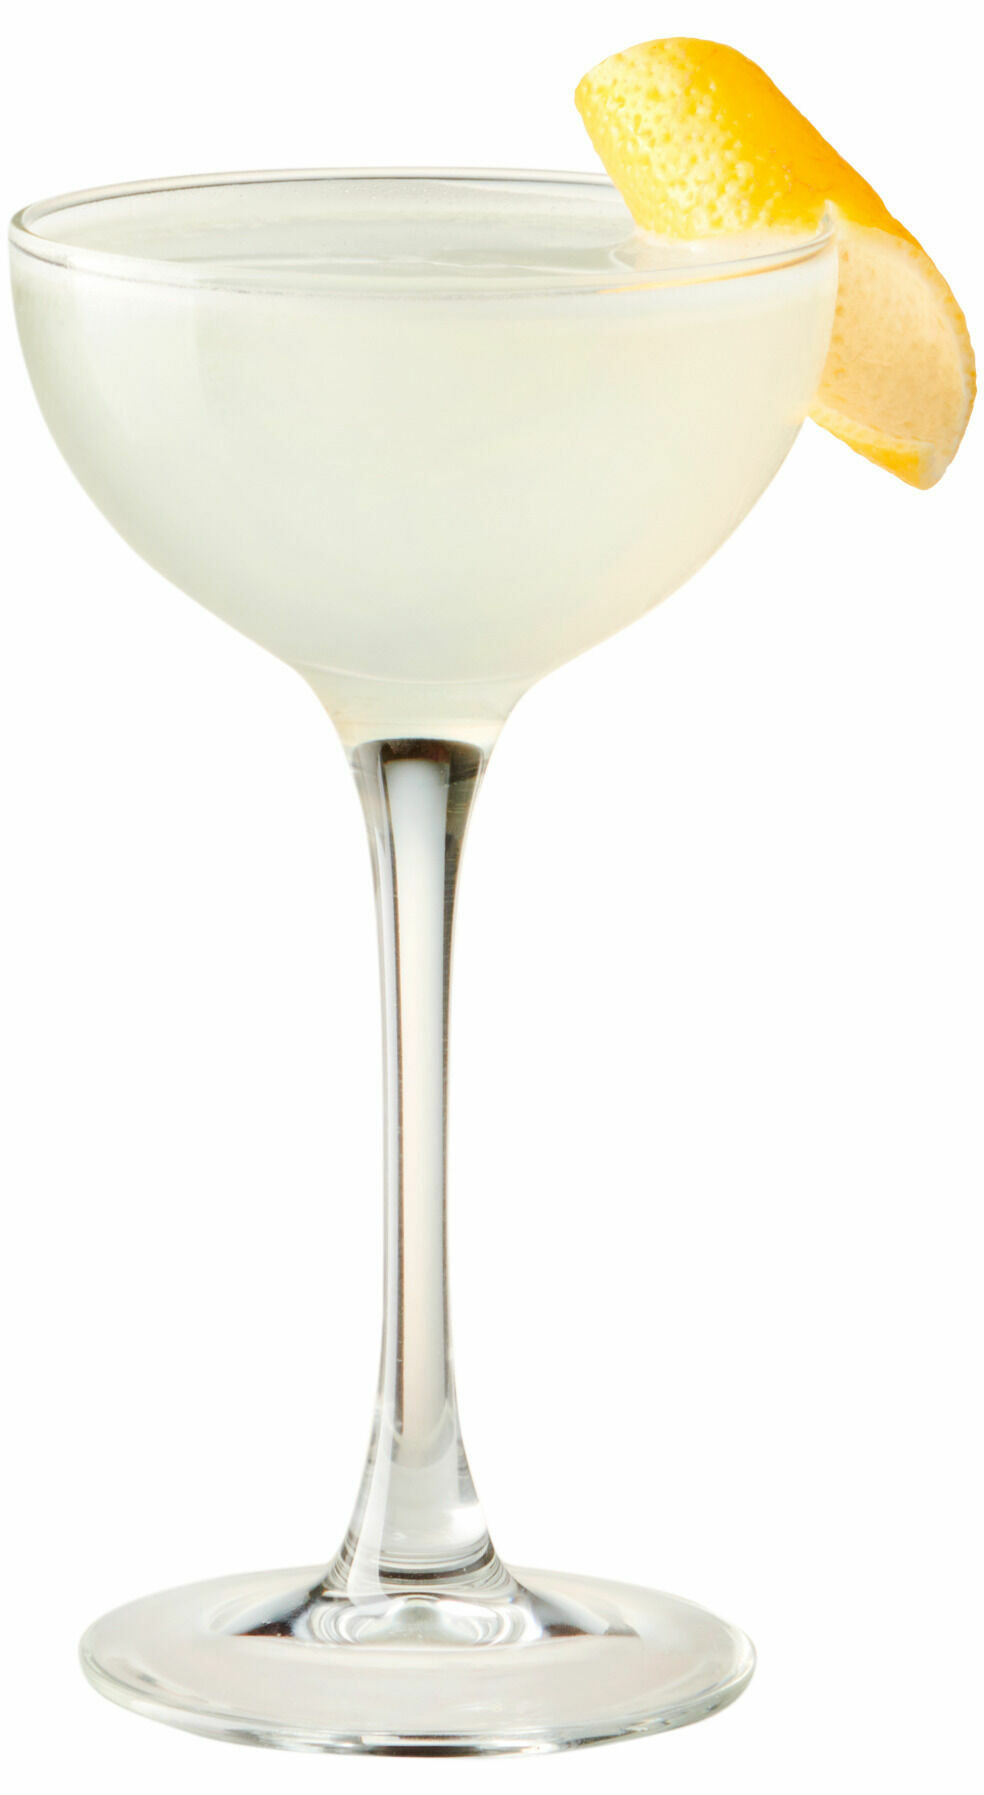 Comment préparer le cocktail Dame blanche